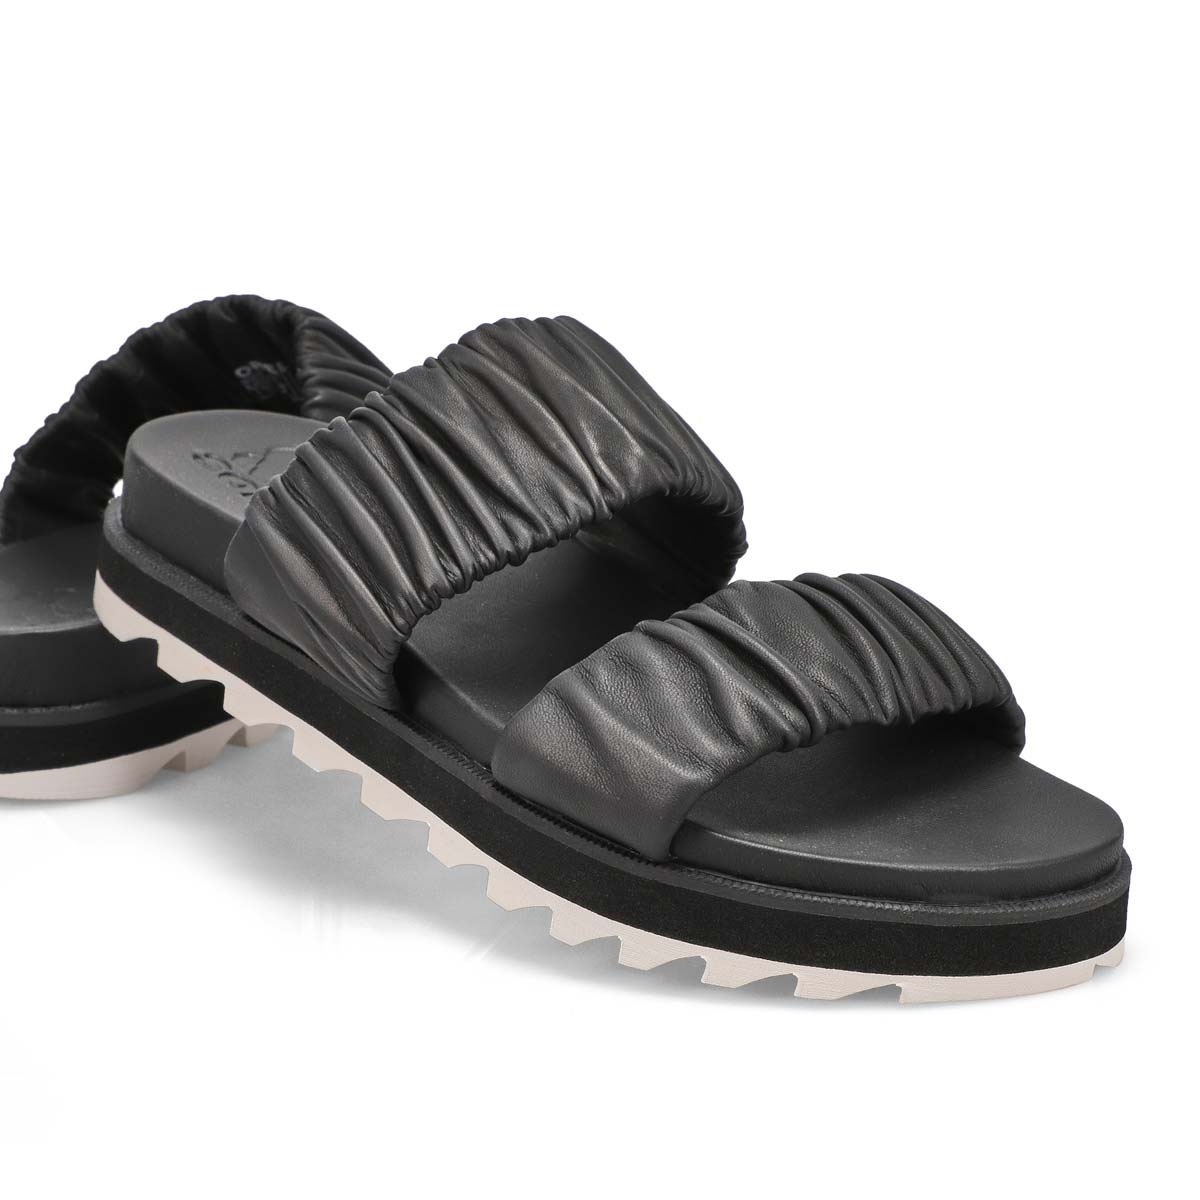 Women's Roaming Slide Sandal - Black